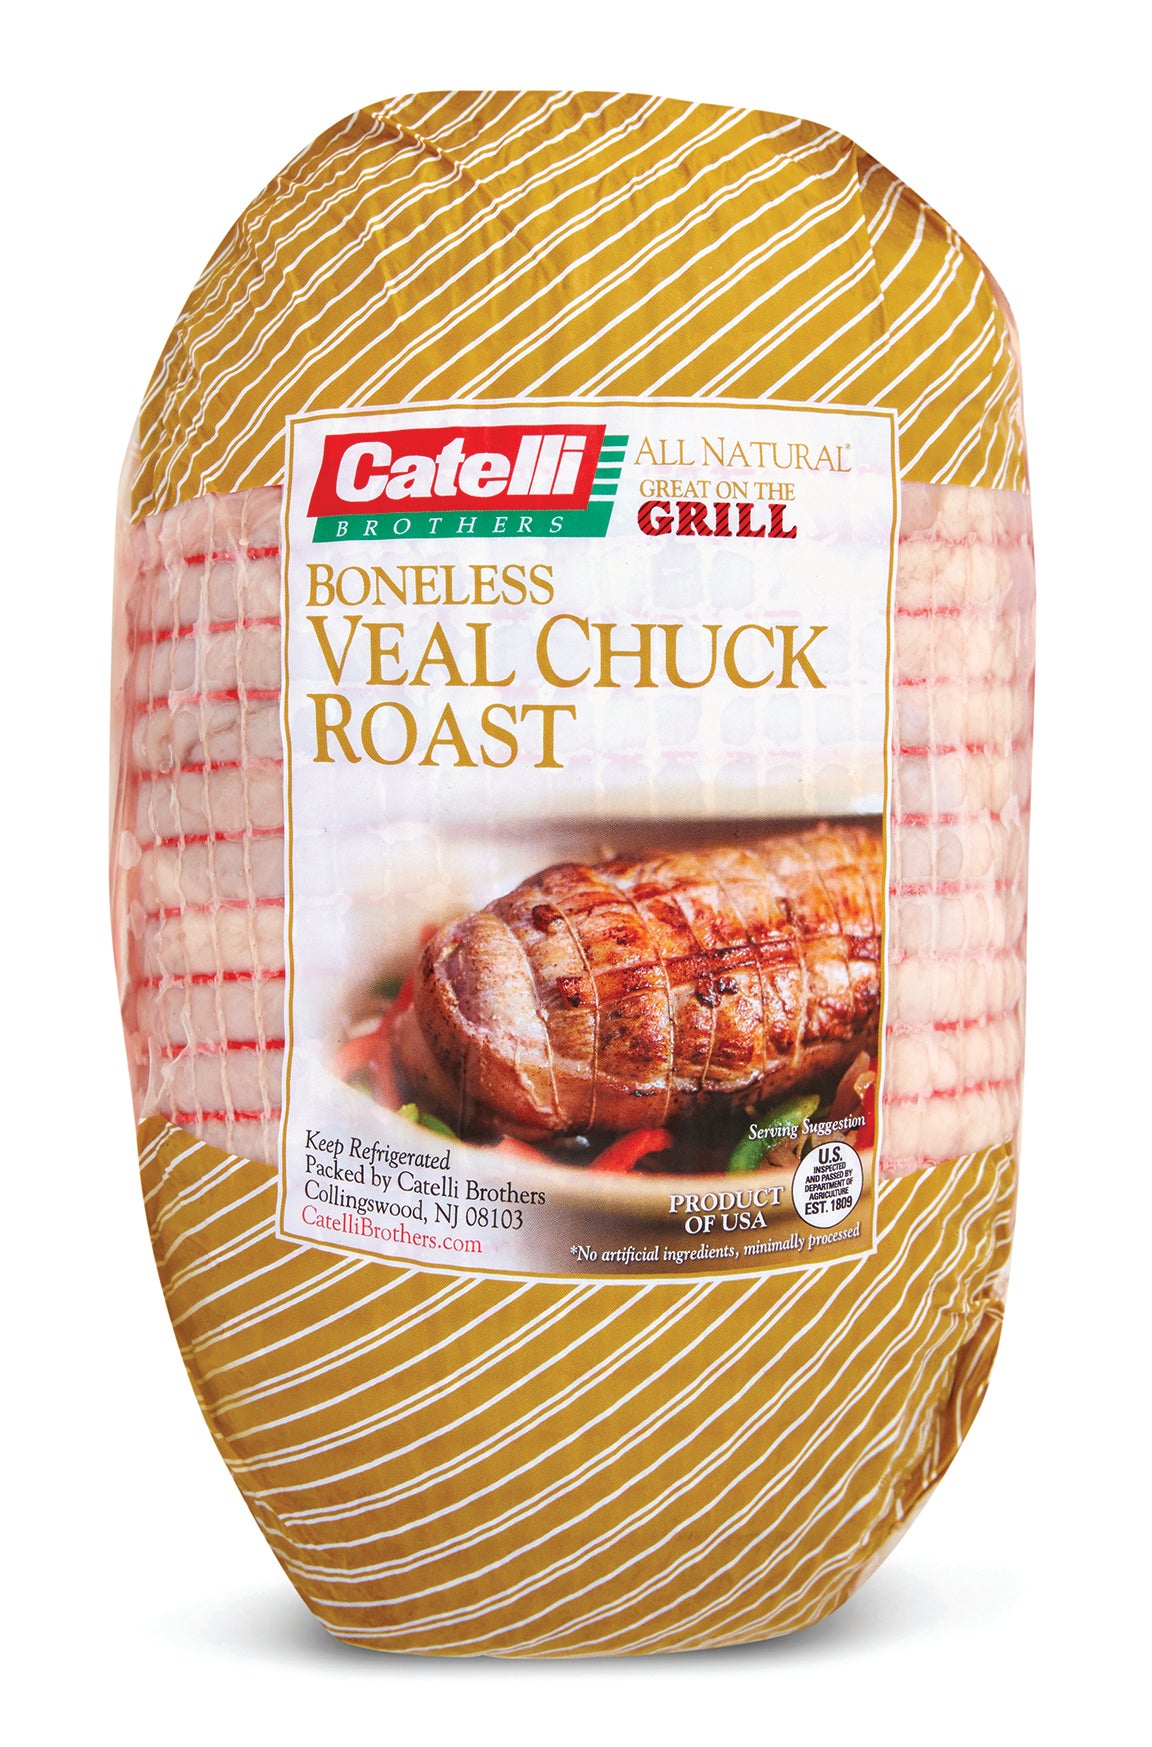 Veal Chuck Roast